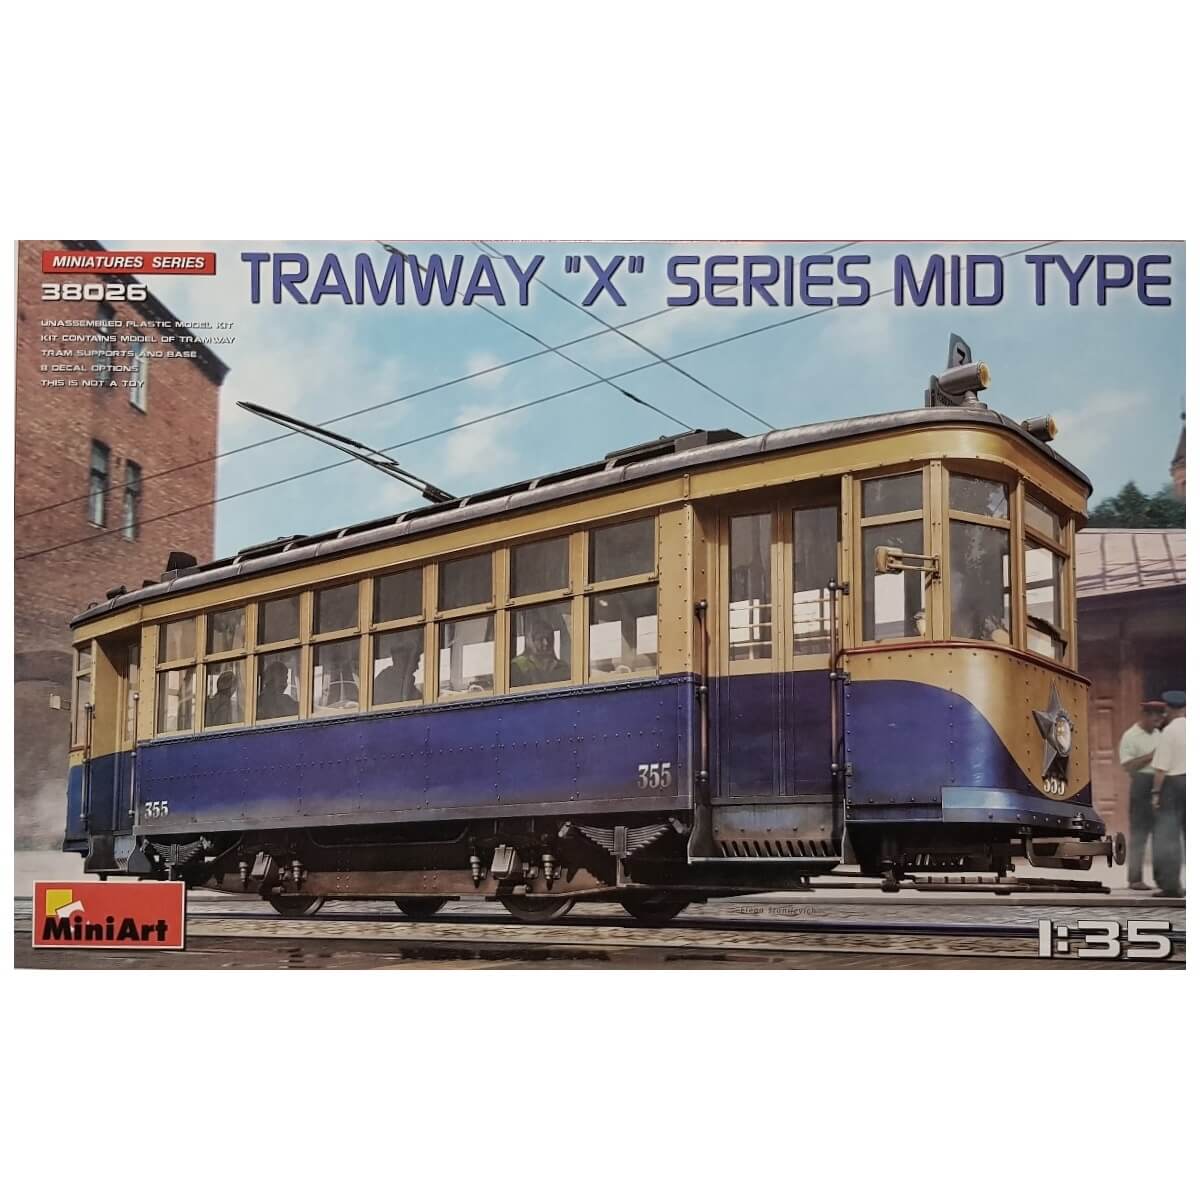 1:35 Tramway X Series - Mid Type - MINIART